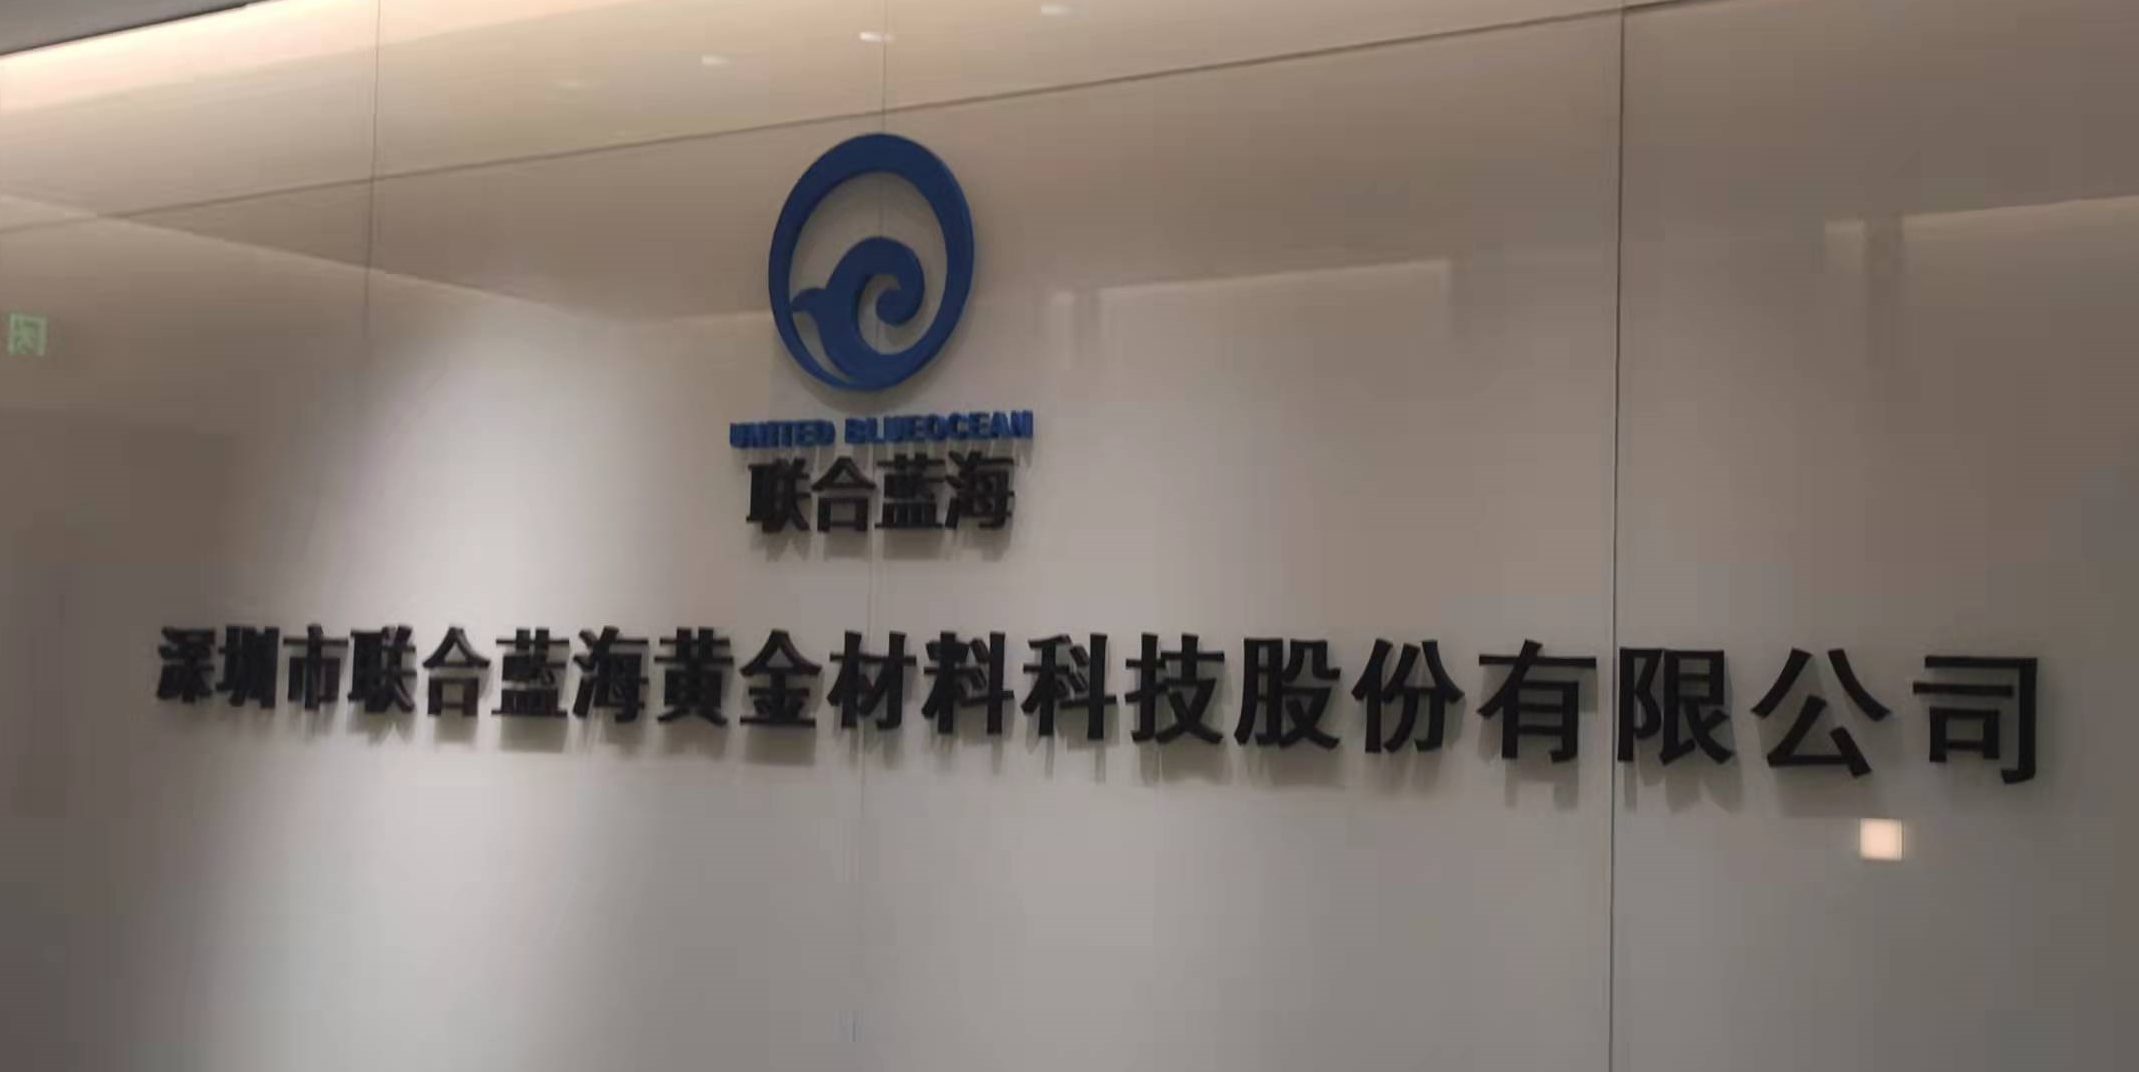 深圳市联合蓝海黄金材料科技股份有限公司